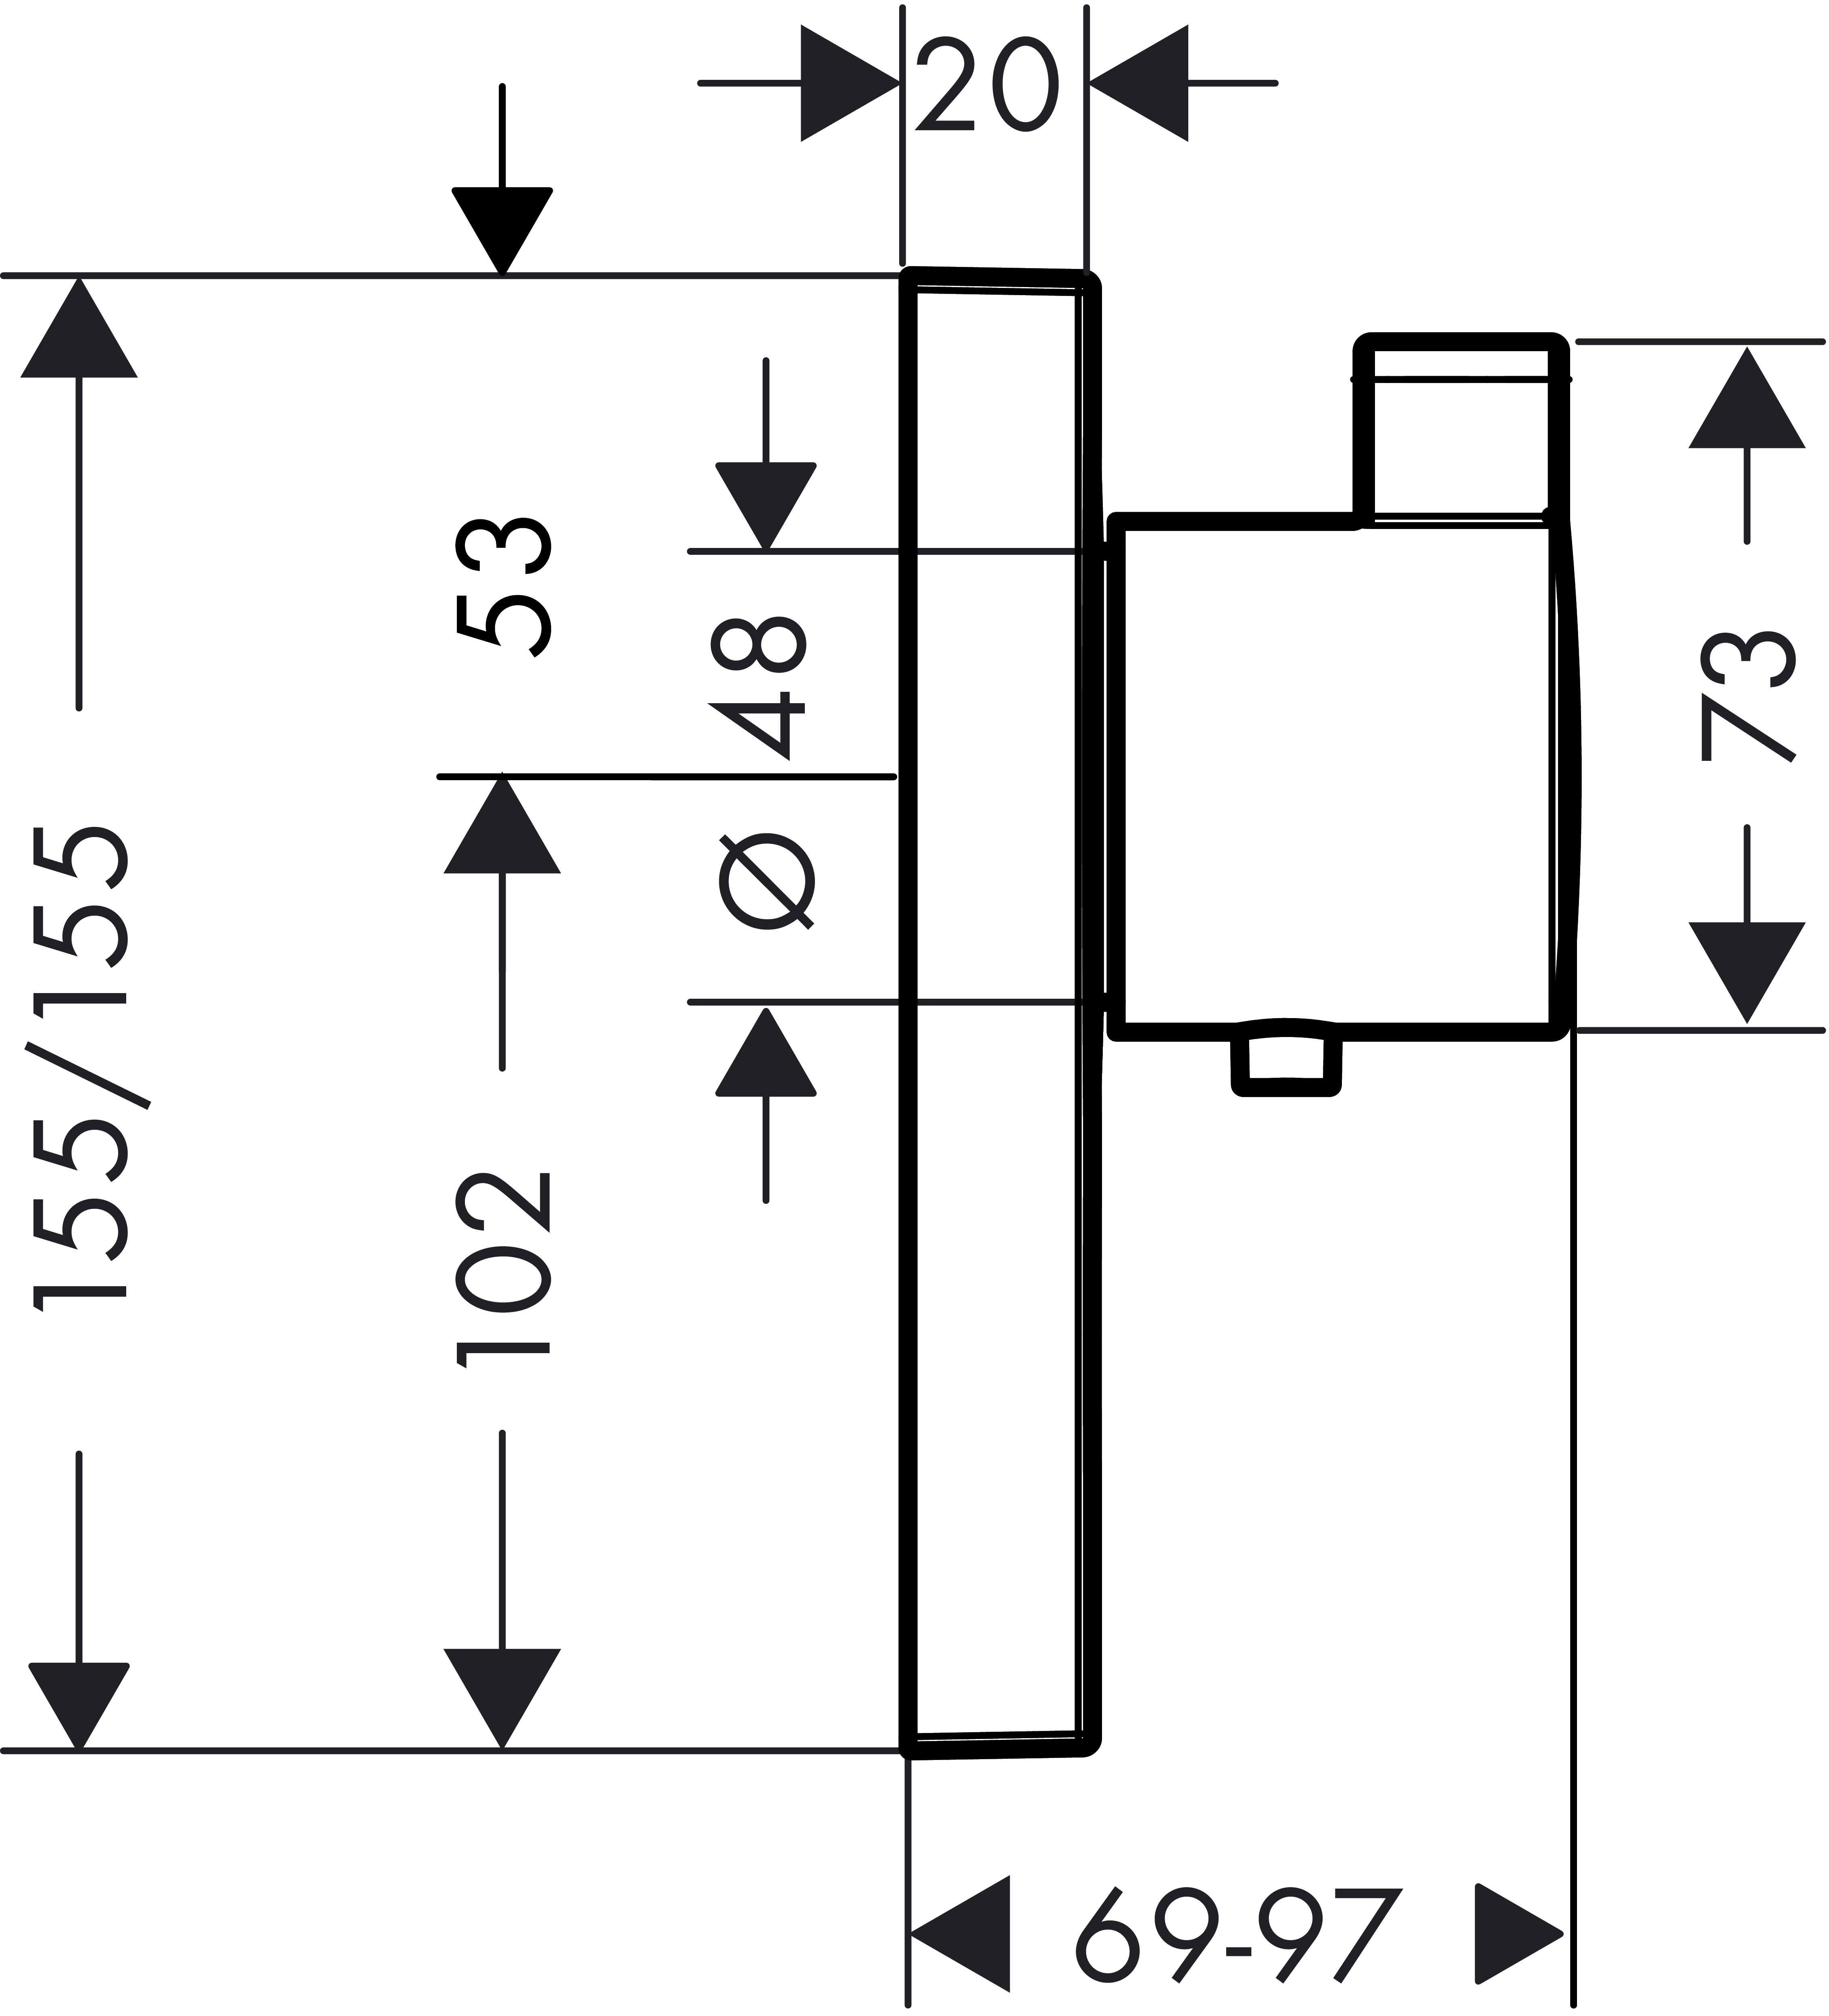 Thermostat Unterputz ShowerSelect Highflow FS 1 Verbraucher/1 Ausg.chrom